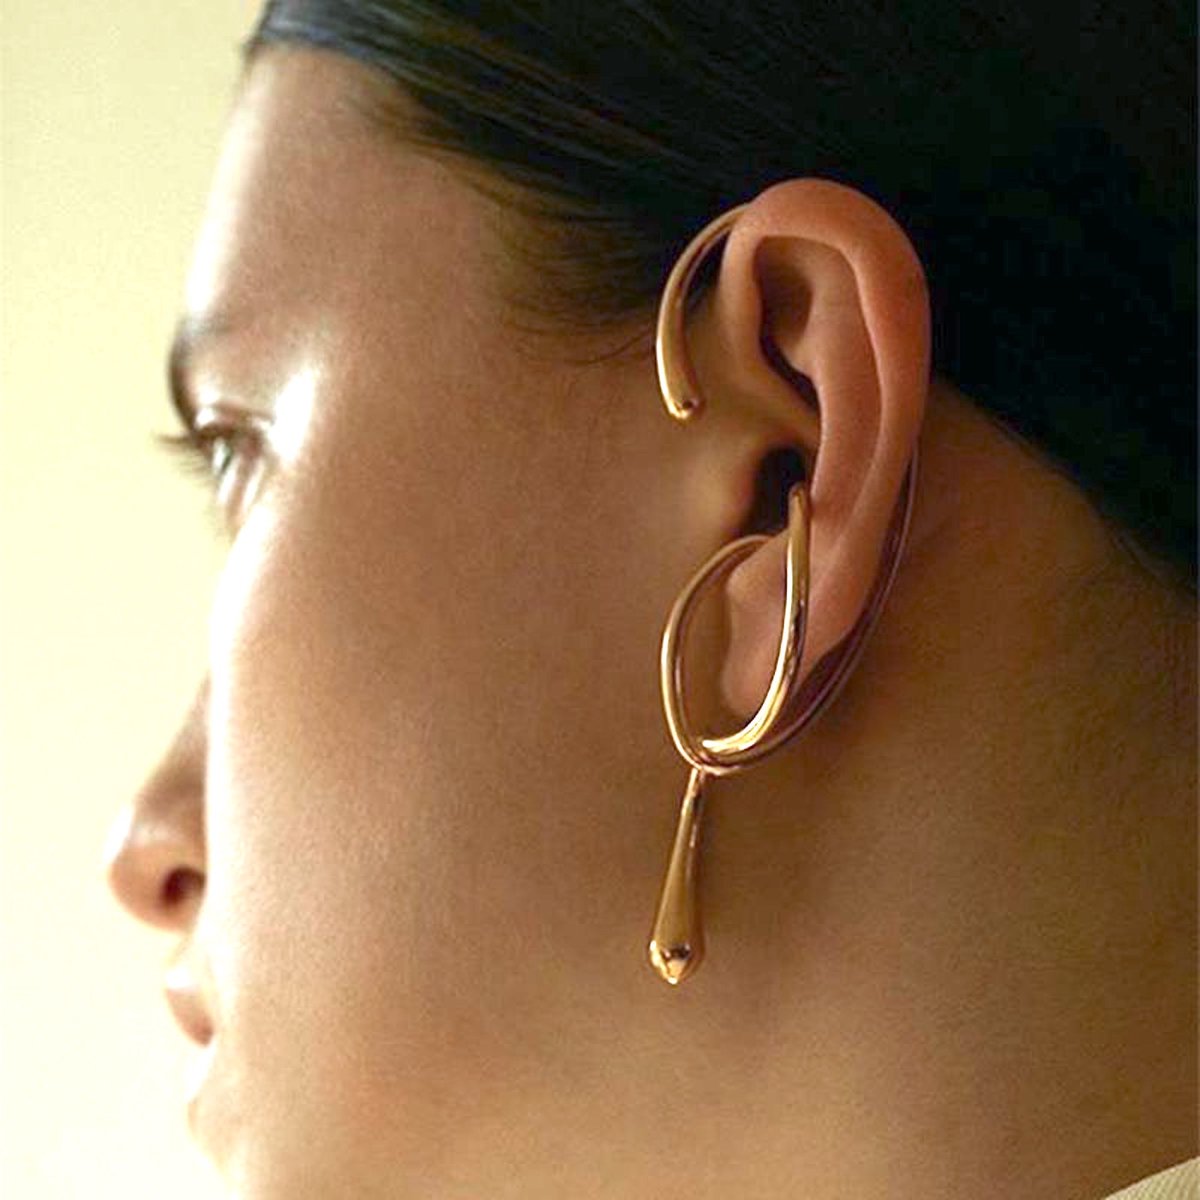 Uniek ontwerp met vloeiende lijn grote oormanchet uit één stuk-goud-left ear